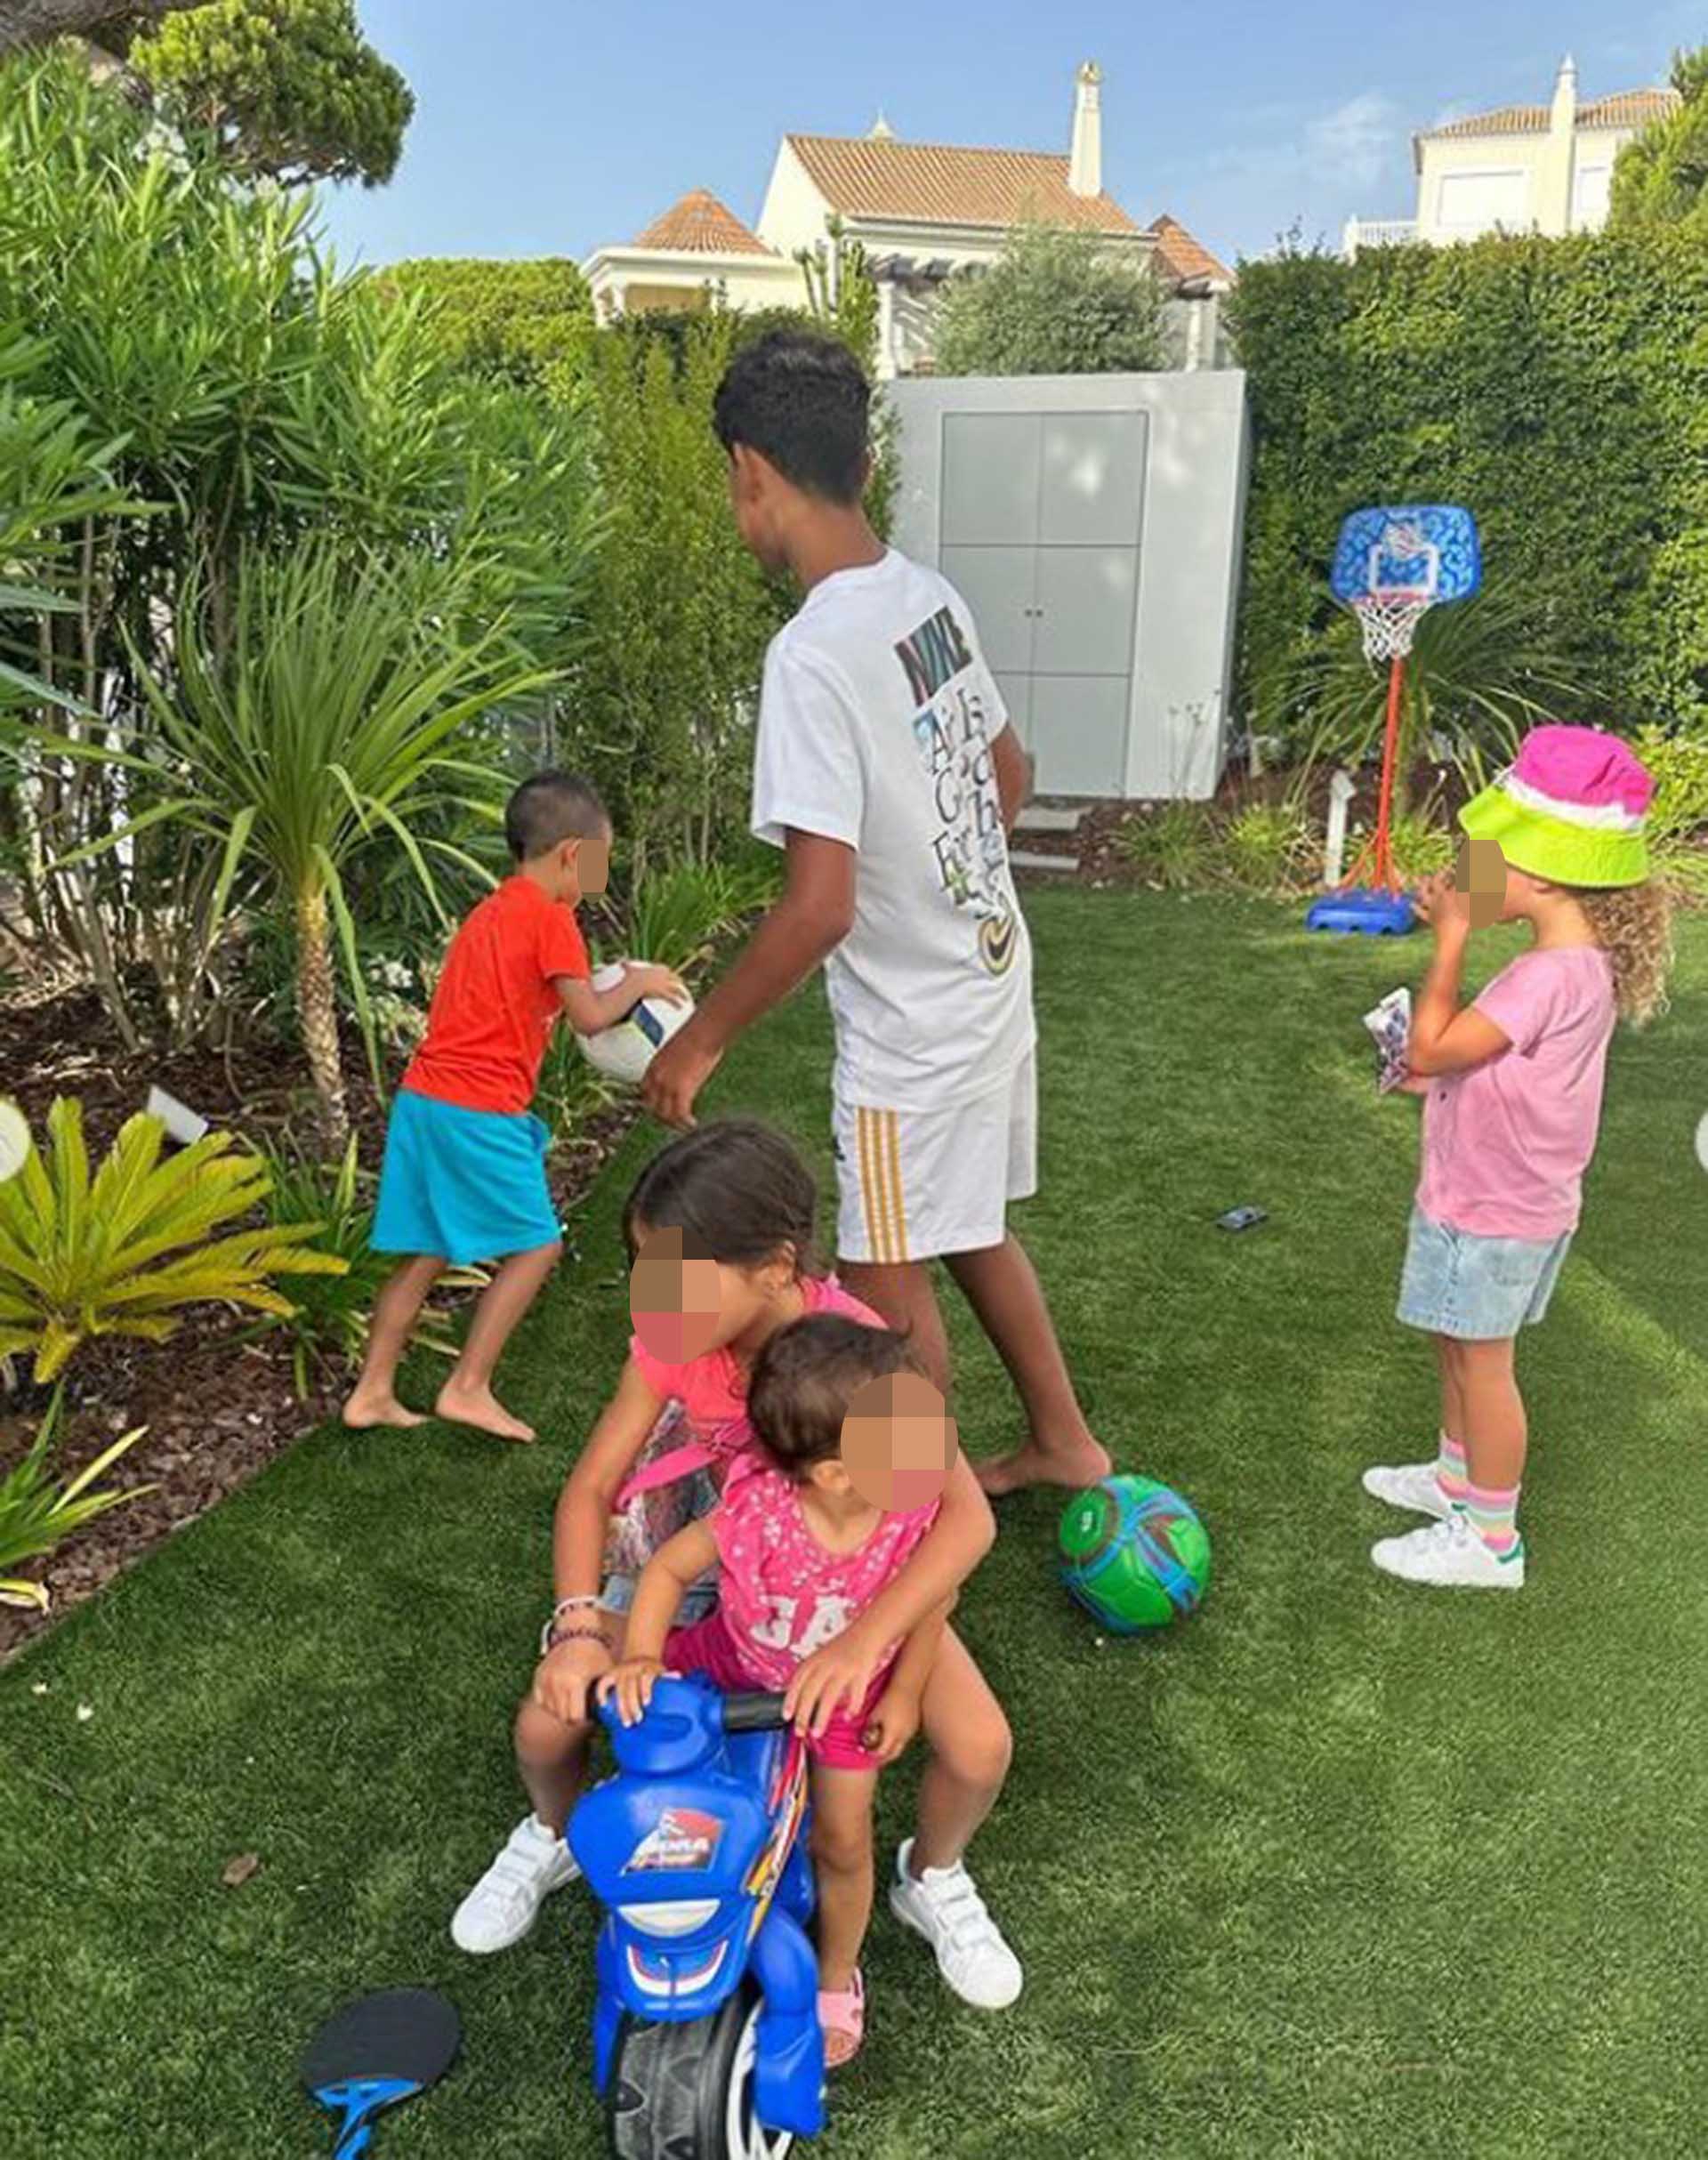 Los hijos de Cristiano Ronaldo juegan en el jardín